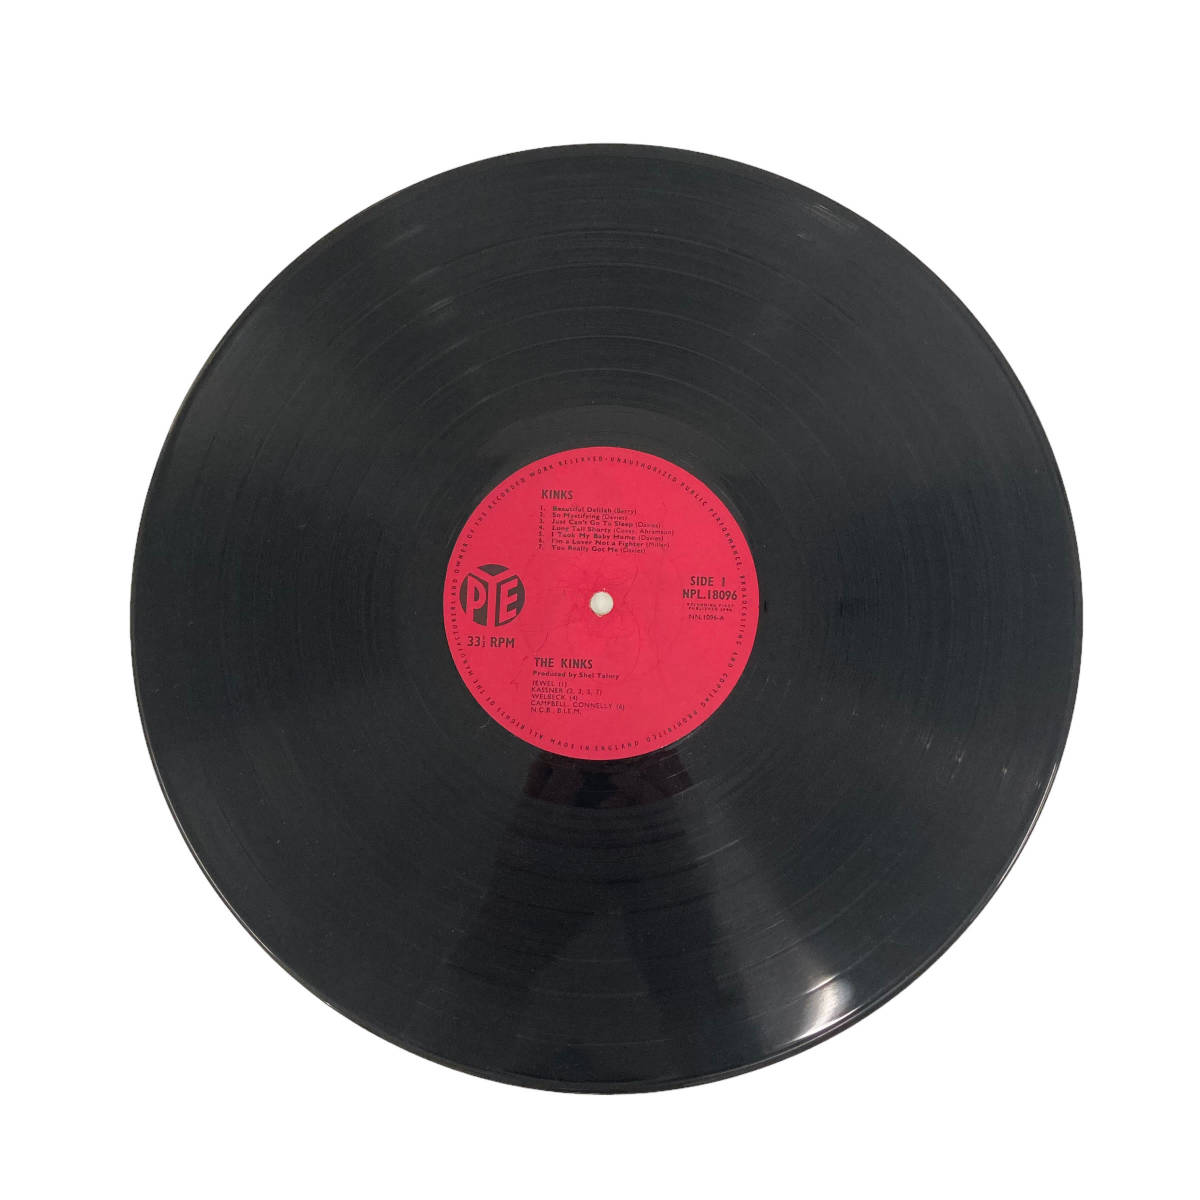 UKorg MONO LP THE KINKS S.T. UKオリジナル盤 PYE NPL 18096 ザ・キンクス 1st モッズ レコード_画像3